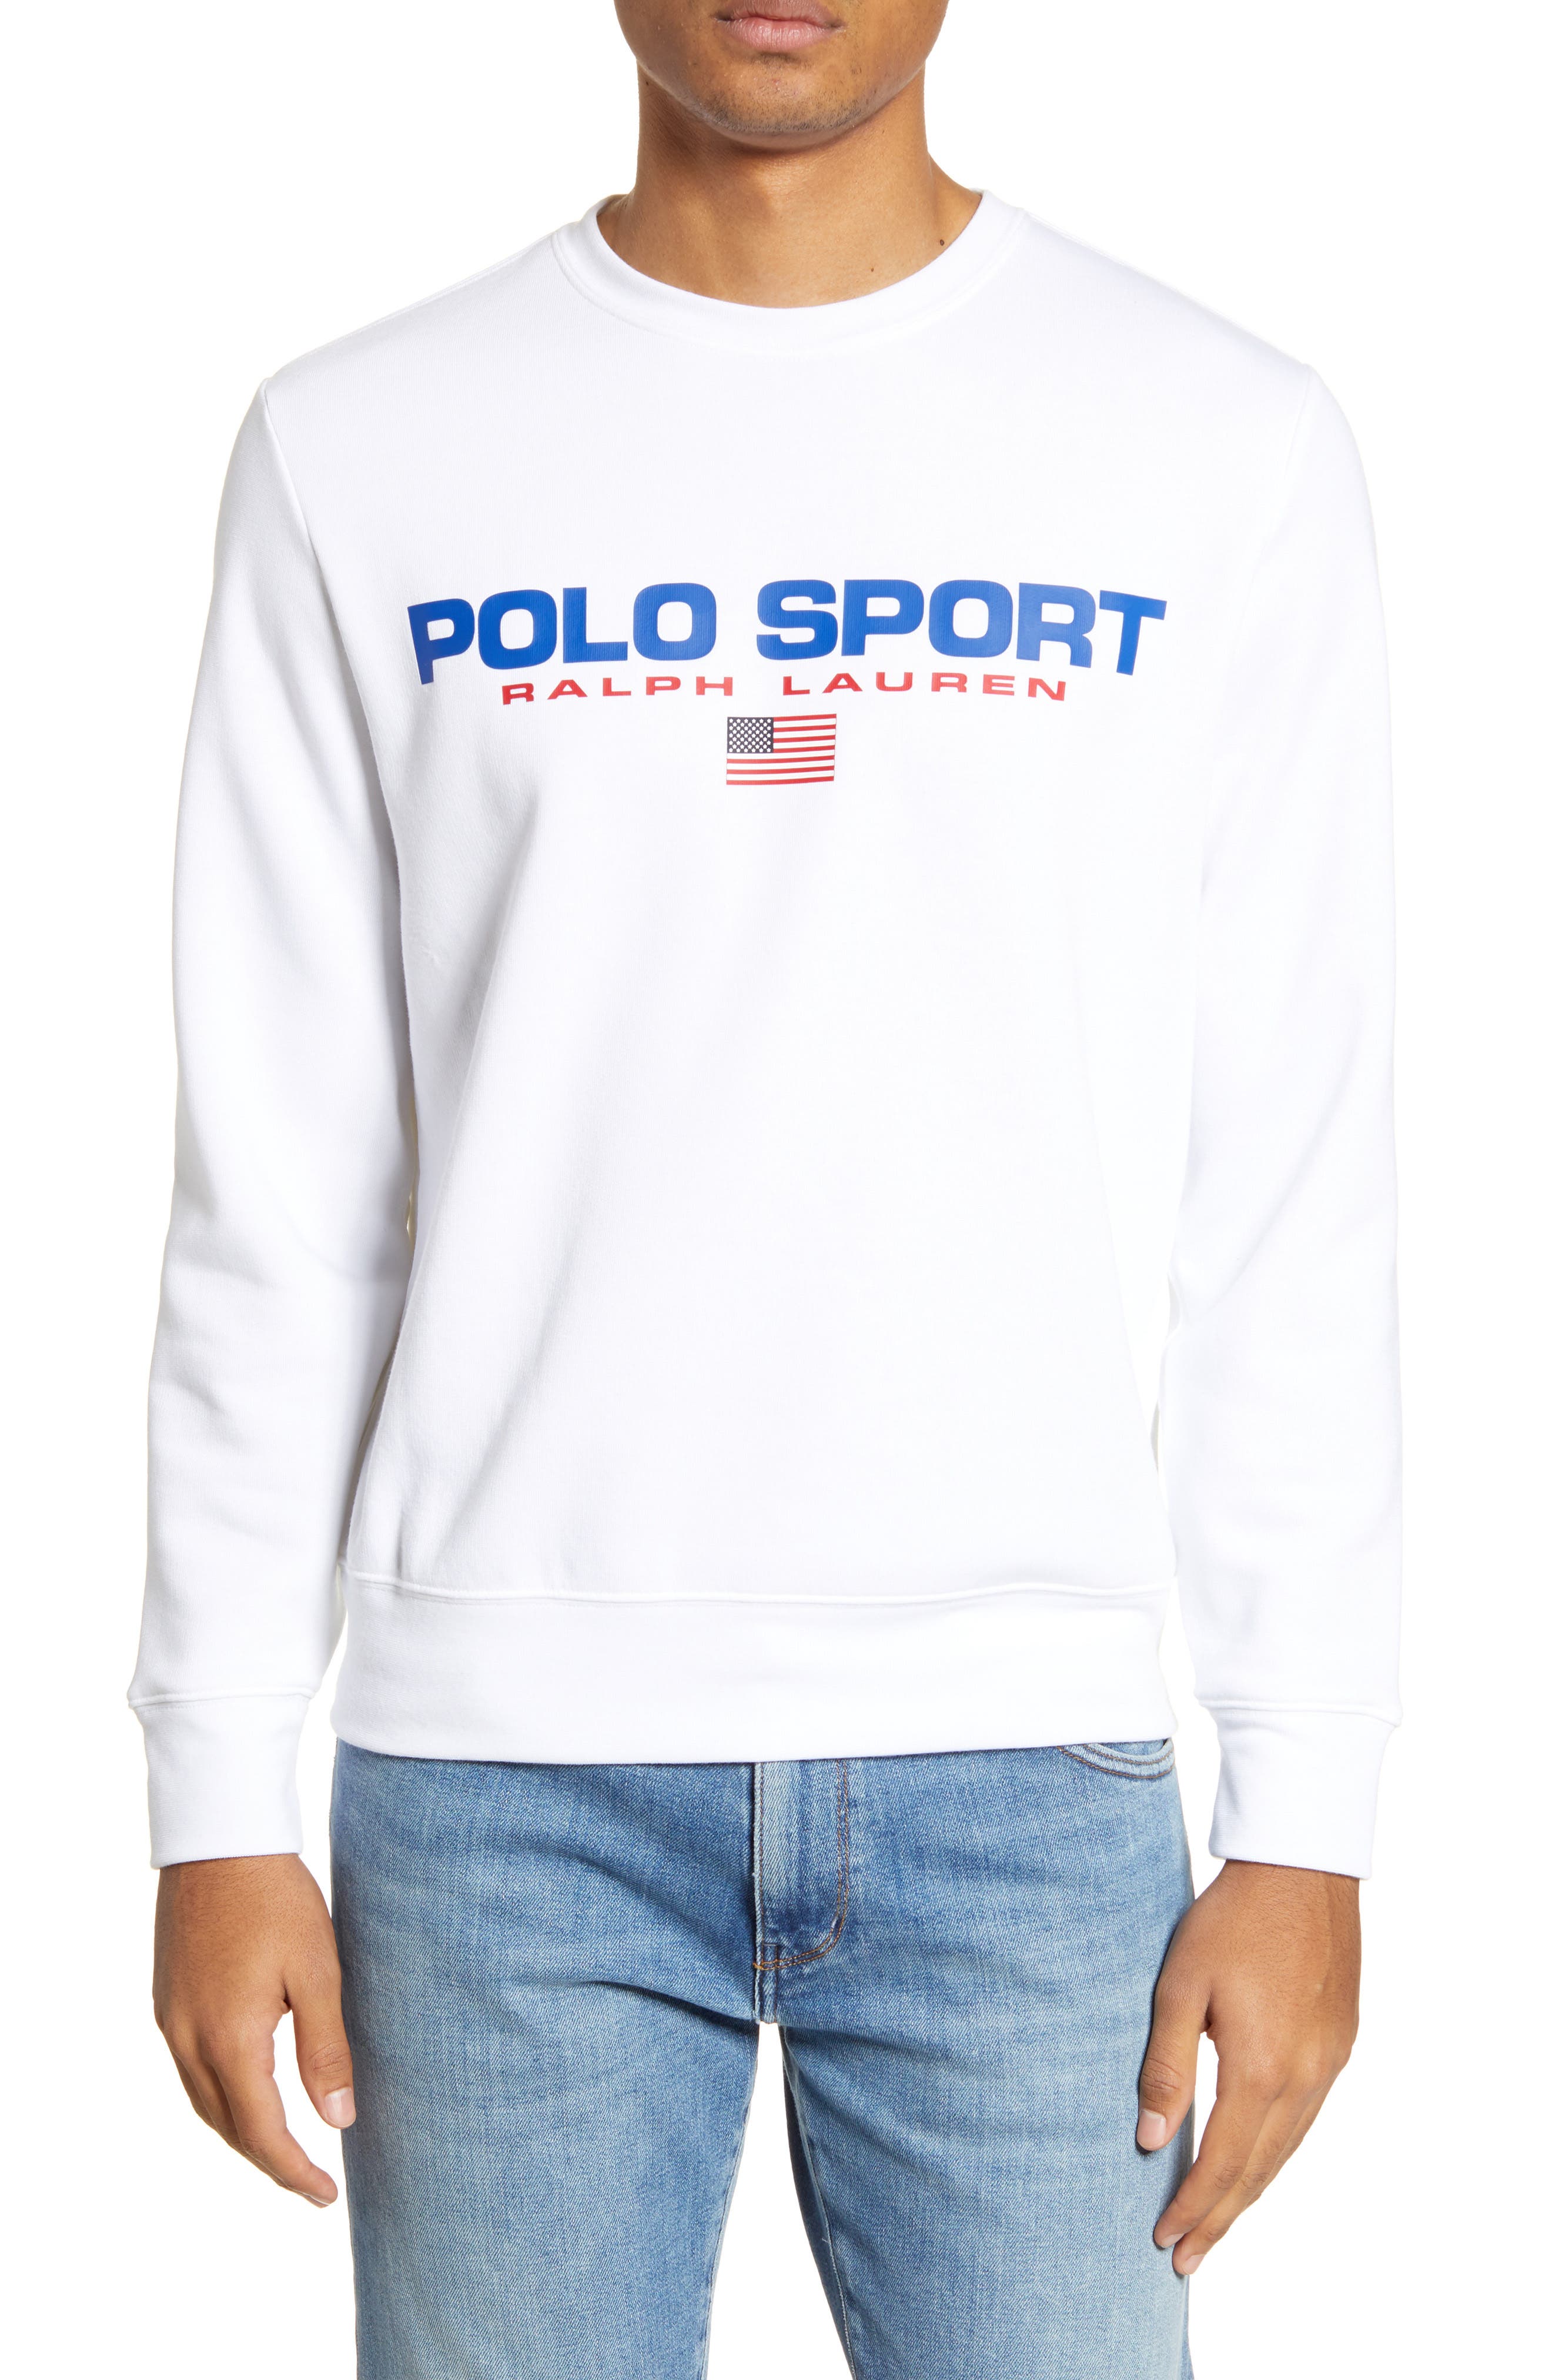 polo sport ralph lauren sweatshirt